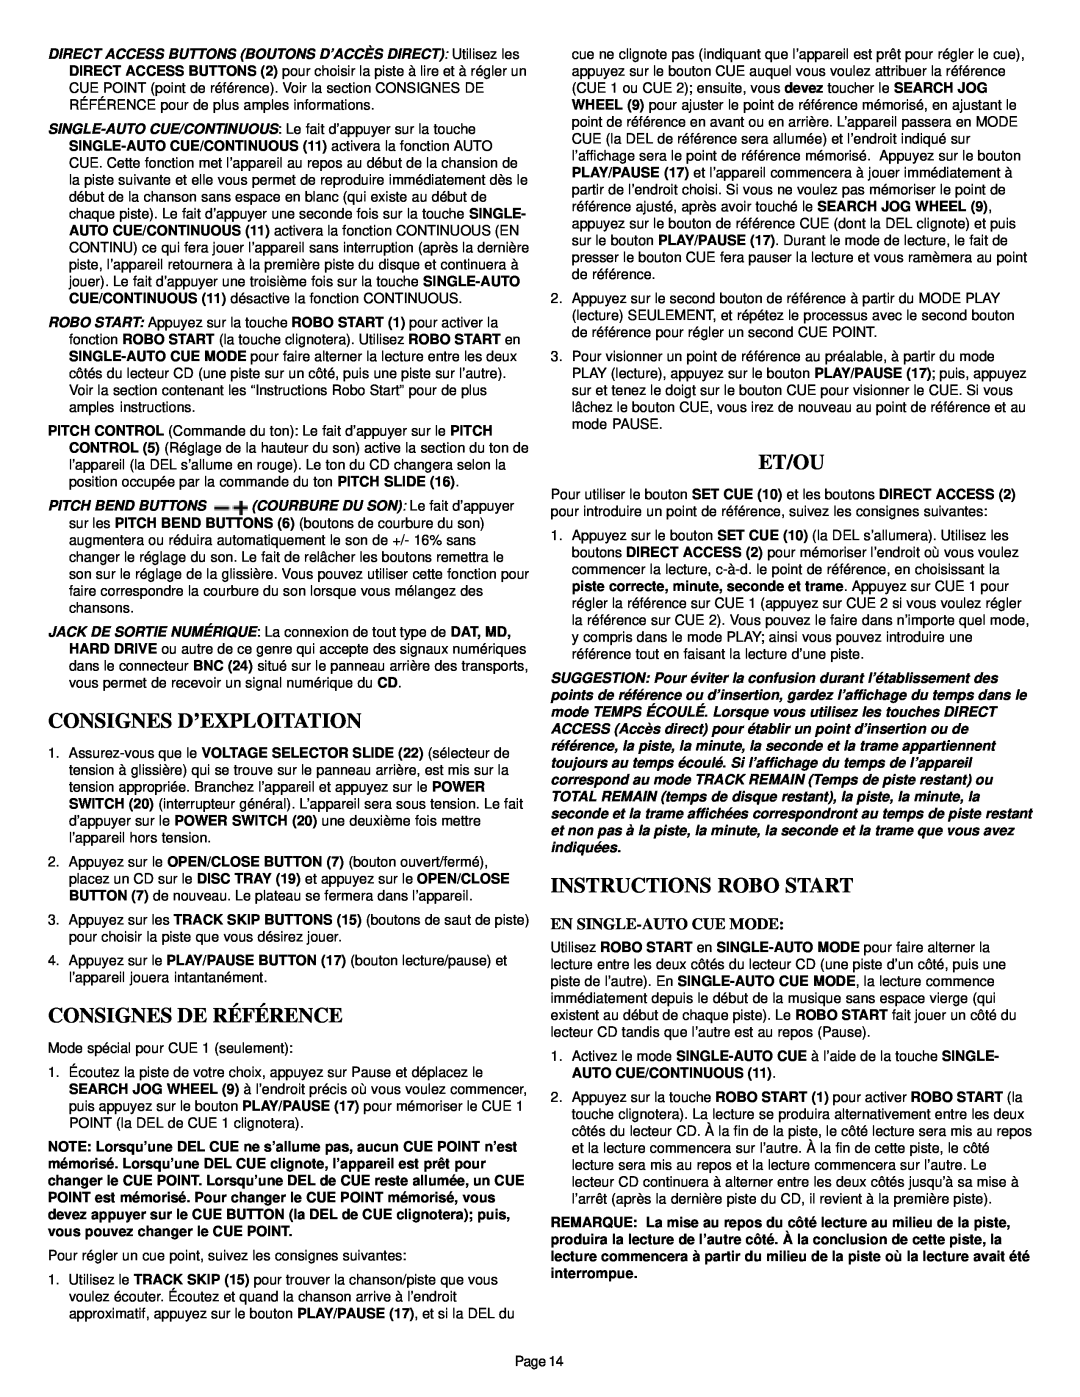 Gemini CD-340 Consignes D’Exploitation, Consignes De Référence, Et/Ou, Instructions Robo Start, En Single-Autocue Mode 